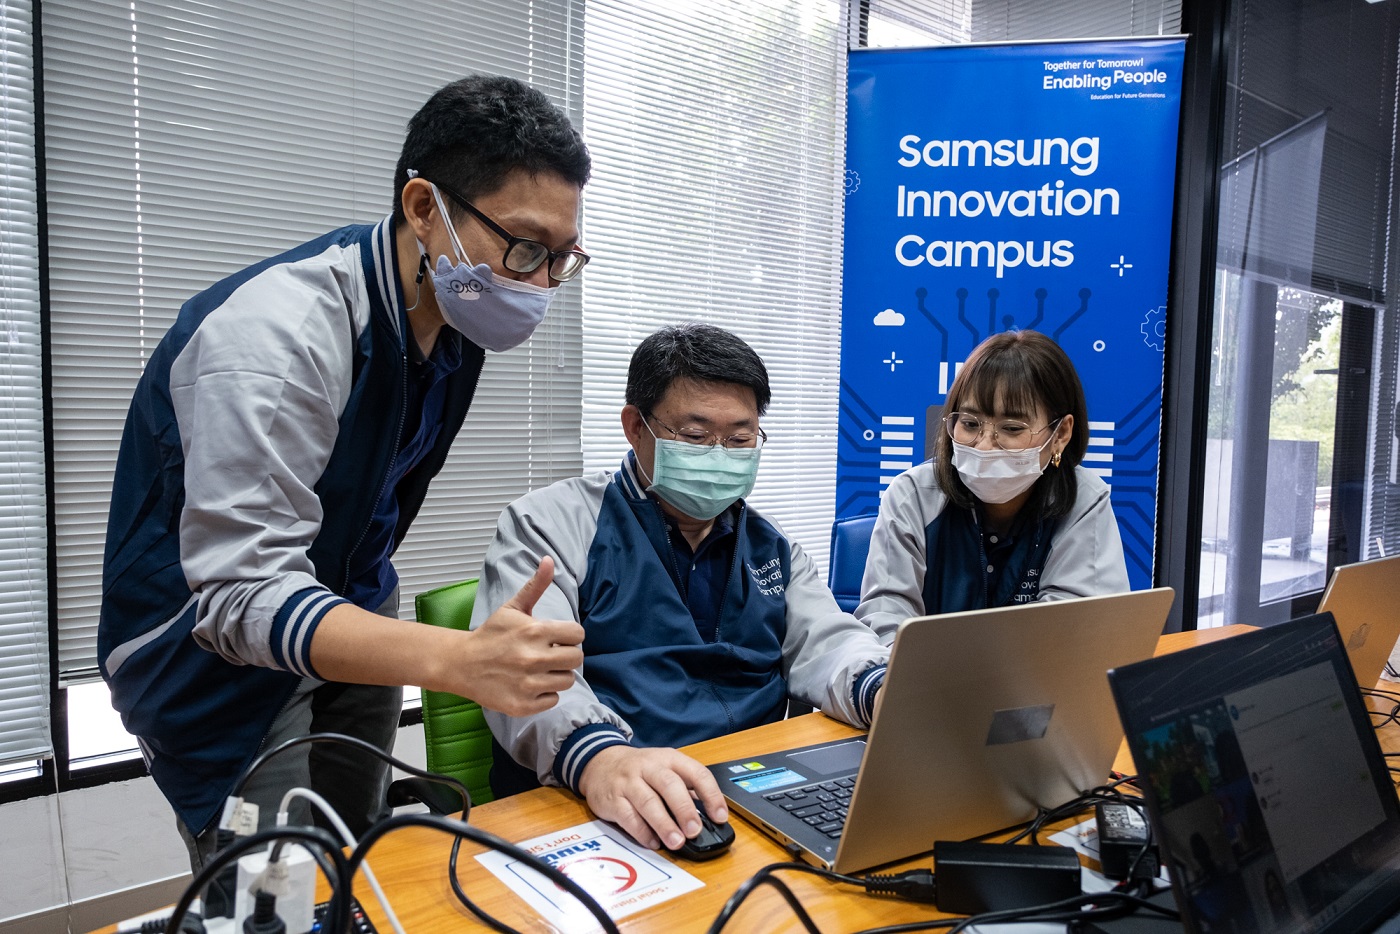 Samsung Innovation Campus: chương trình giáo dục quốc tế tầm cỡ mang tầm nhìn kiến tạo tương lai - ảnh 3